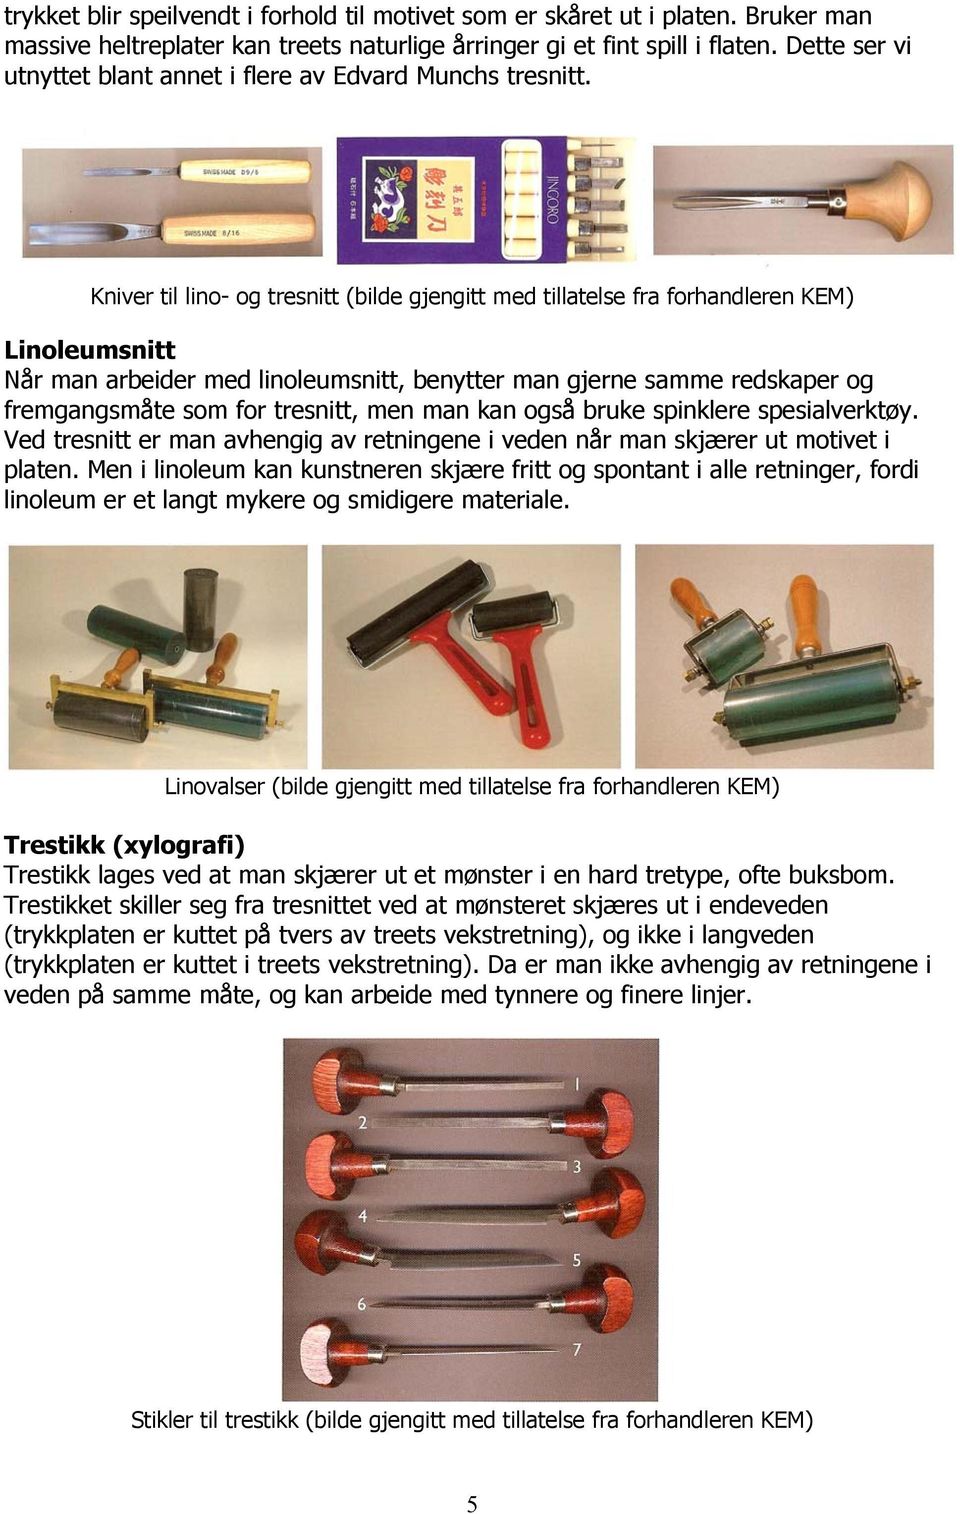 Kniver til lino- og tresnitt (bilde gjengitt med tillatelse fra forhandleren KEM) Linoleumsnitt Når man arbeider med linoleumsnitt, benytter man gjerne samme redskaper og fremgangsmåte som for